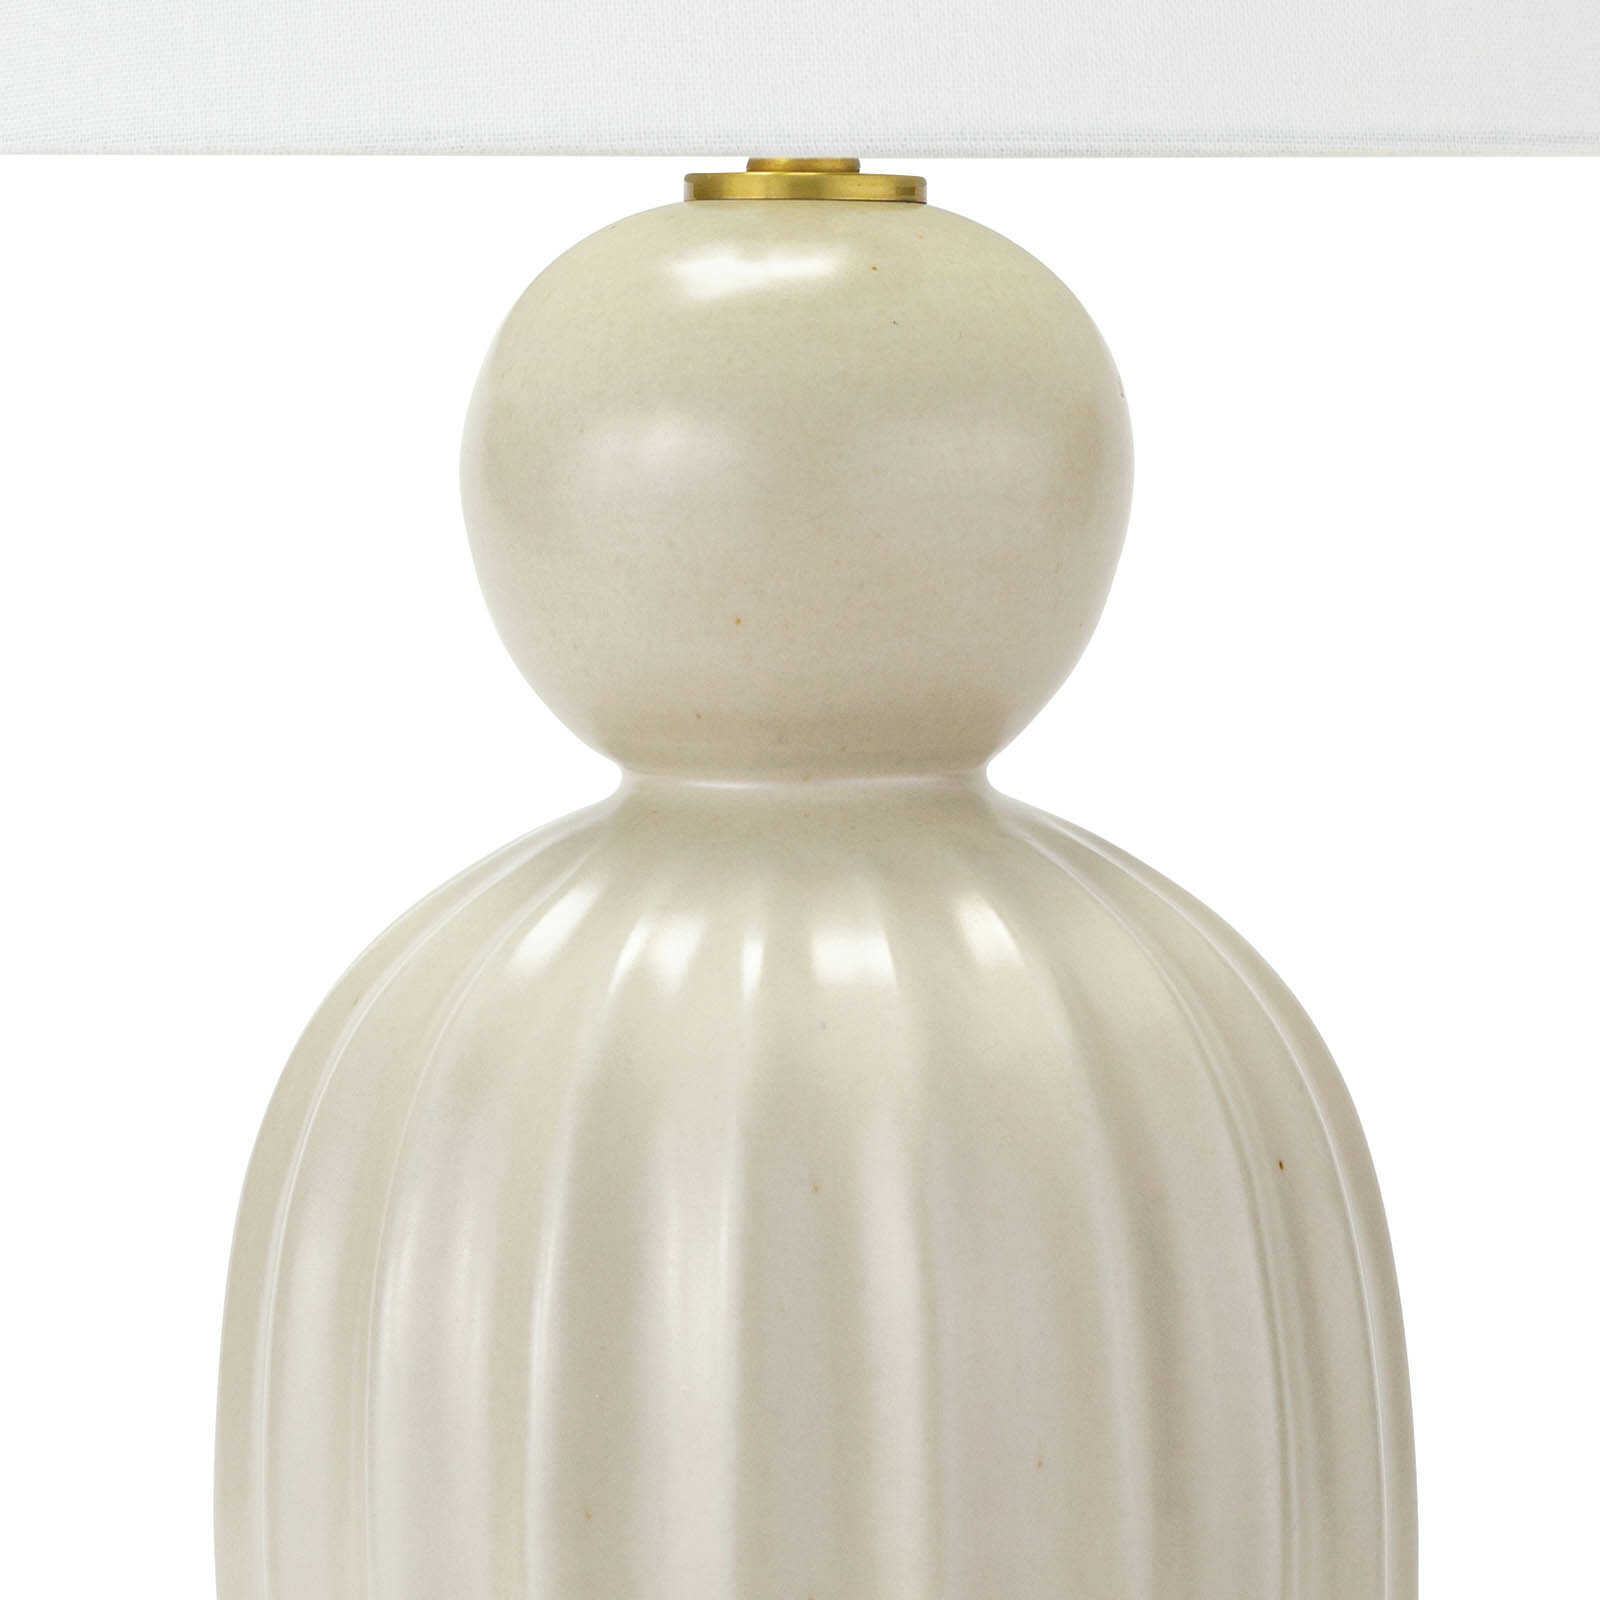 Regina Andrew Tiera Ceramic Table Lamp